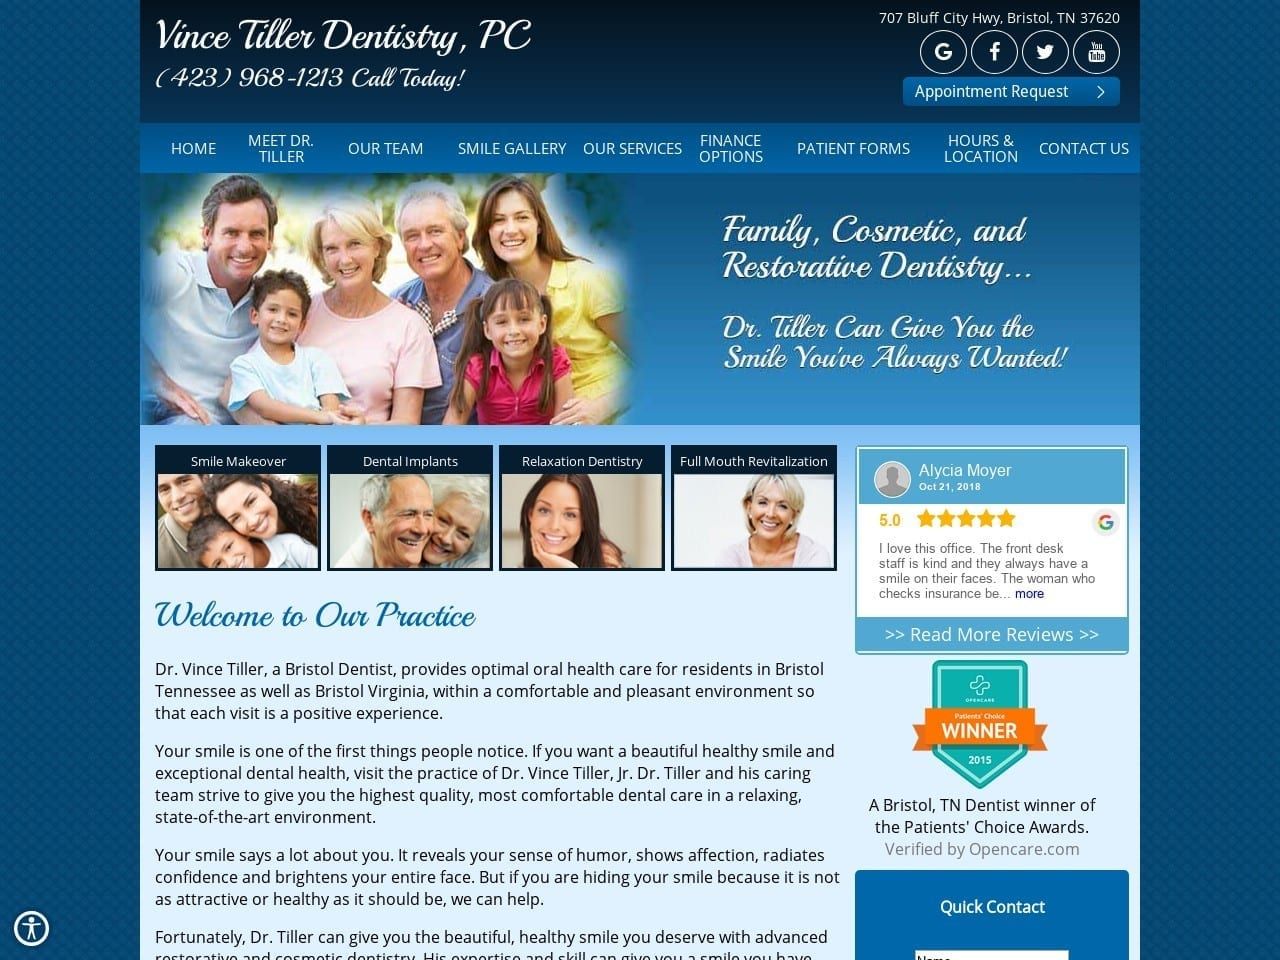 Vince Tiller Dentistry PC Website Screenshot from drvincetiller.com